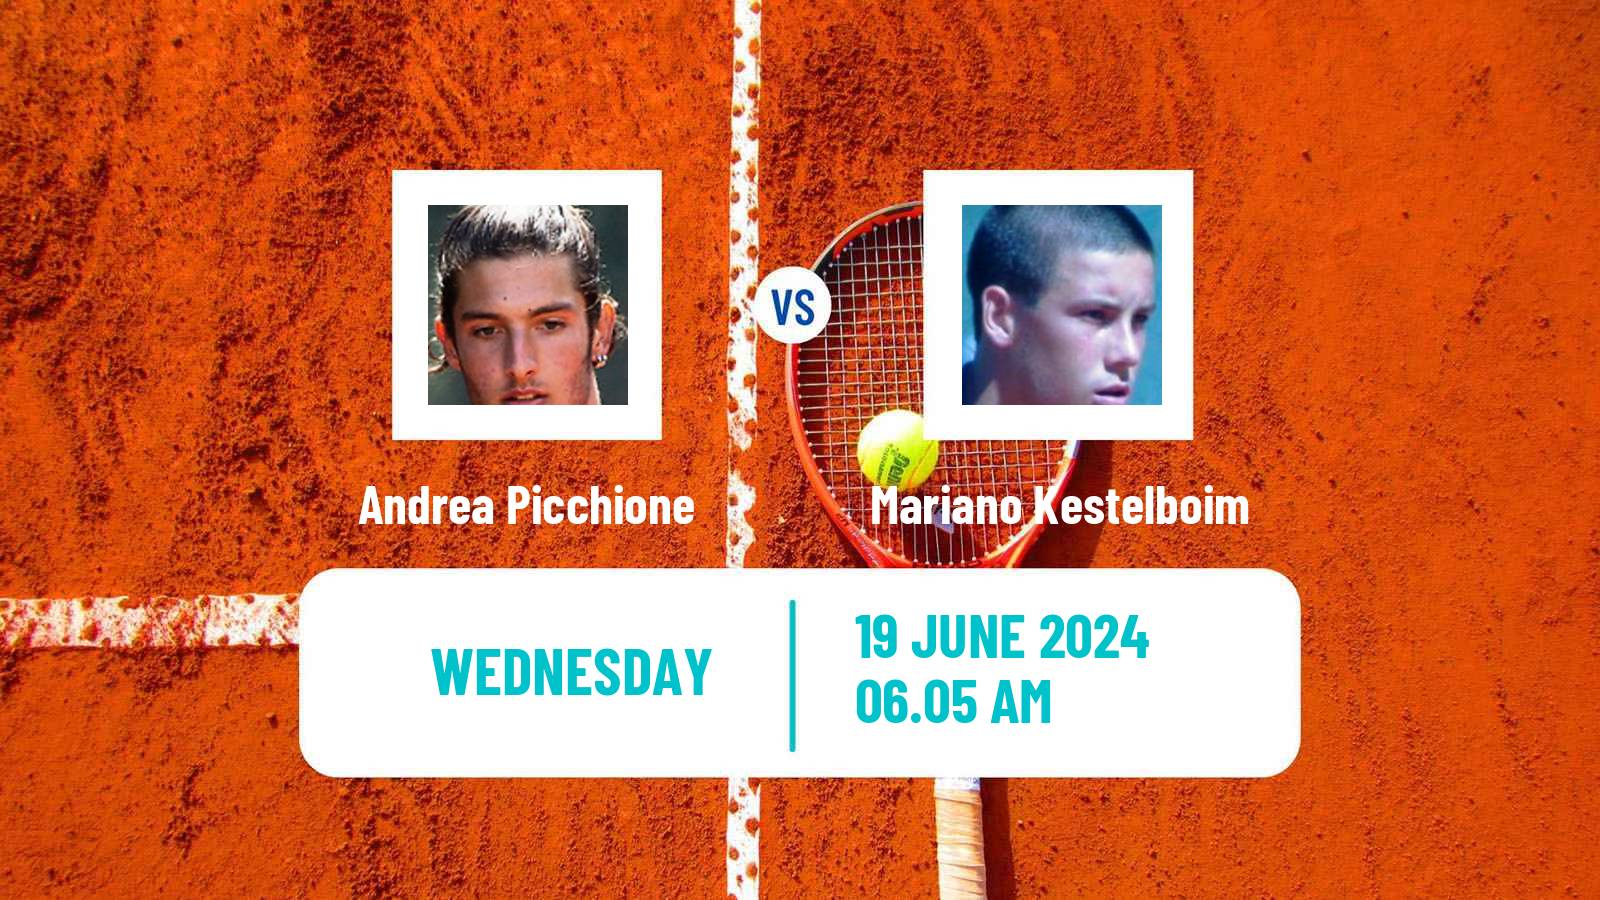 Tennis ITF M25 Cattolica Men Andrea Picchione - Mariano Kestelboim